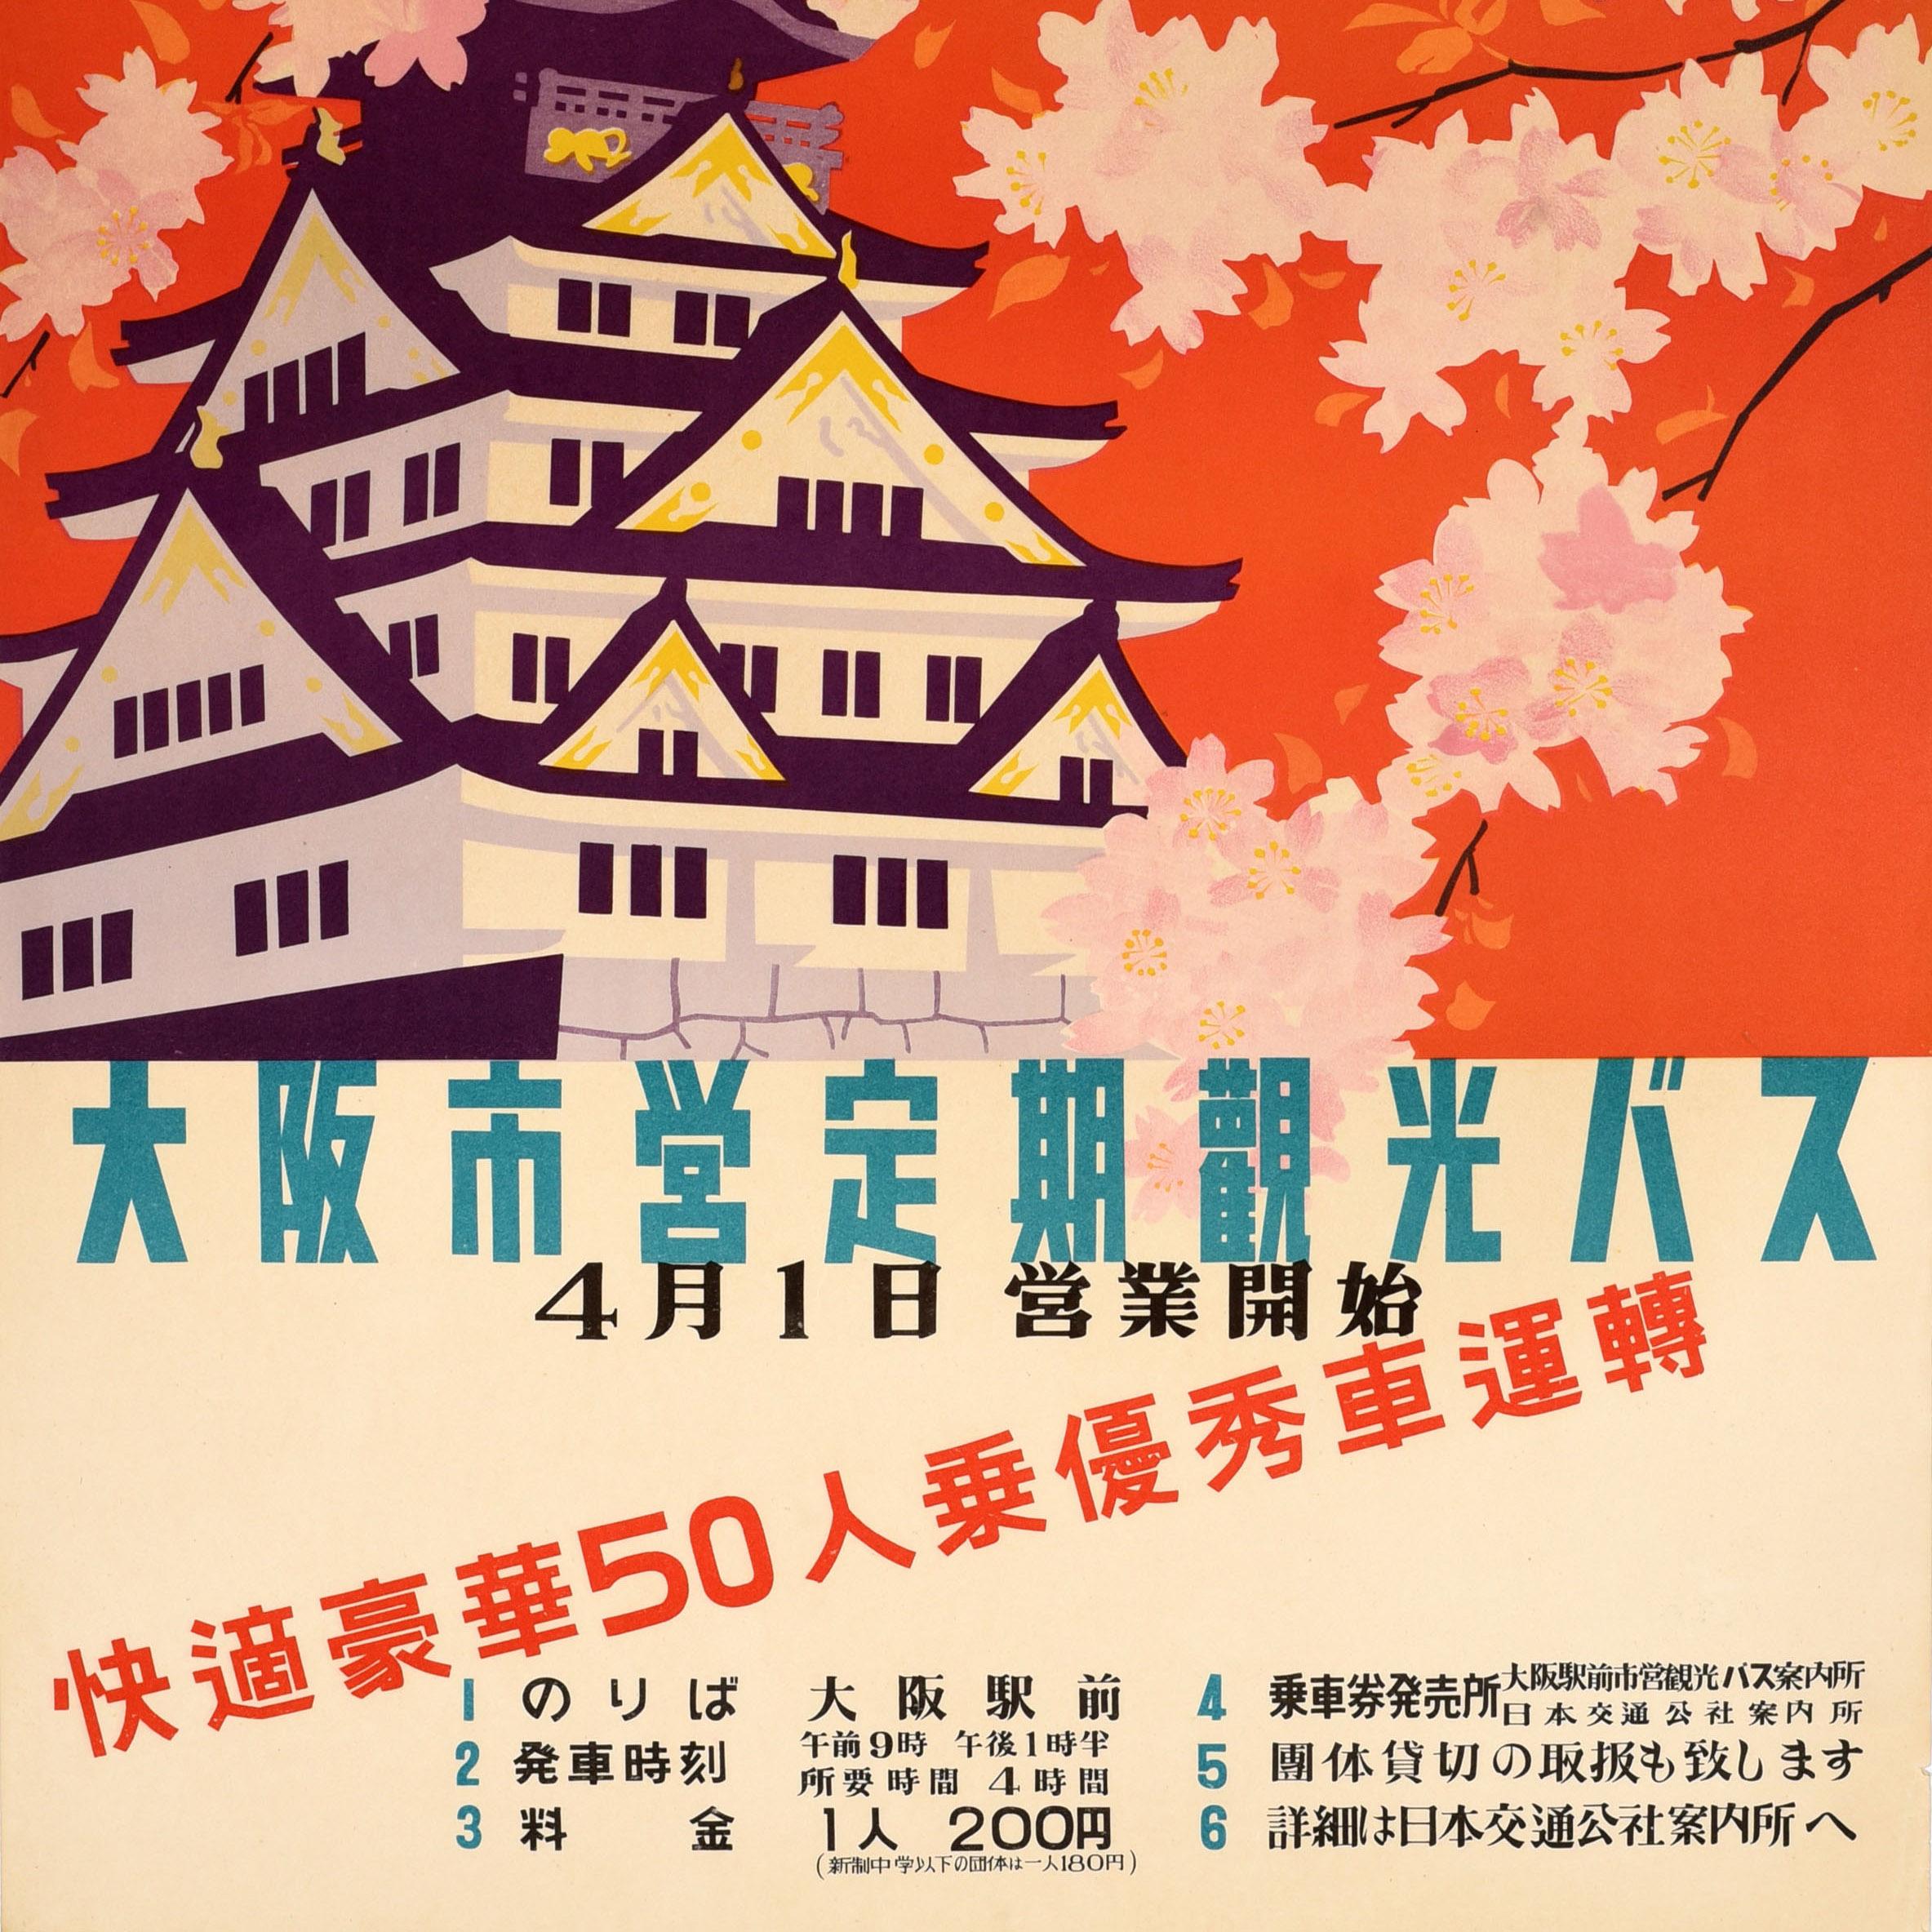 Original Vintage Asia Travel Poster Osaka Castle Japan Bus Tours Sakura Cherry - Orange Print by Unknown